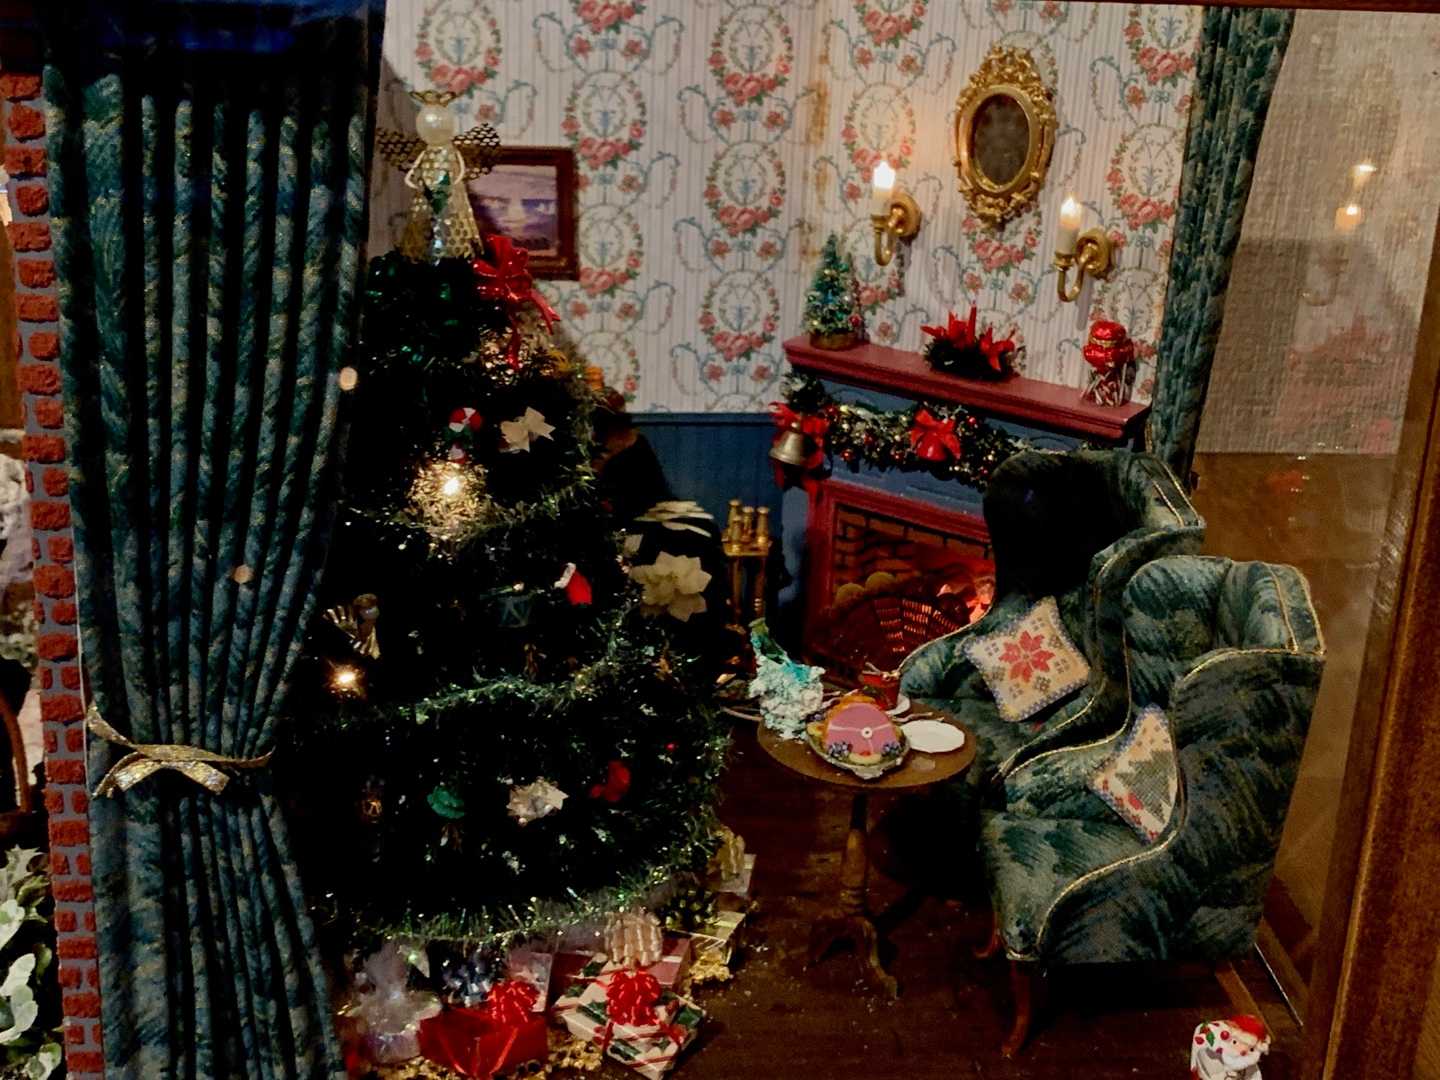 うちから持参したクリスマスのドールハウス。うちでは邪魔者扱いされて